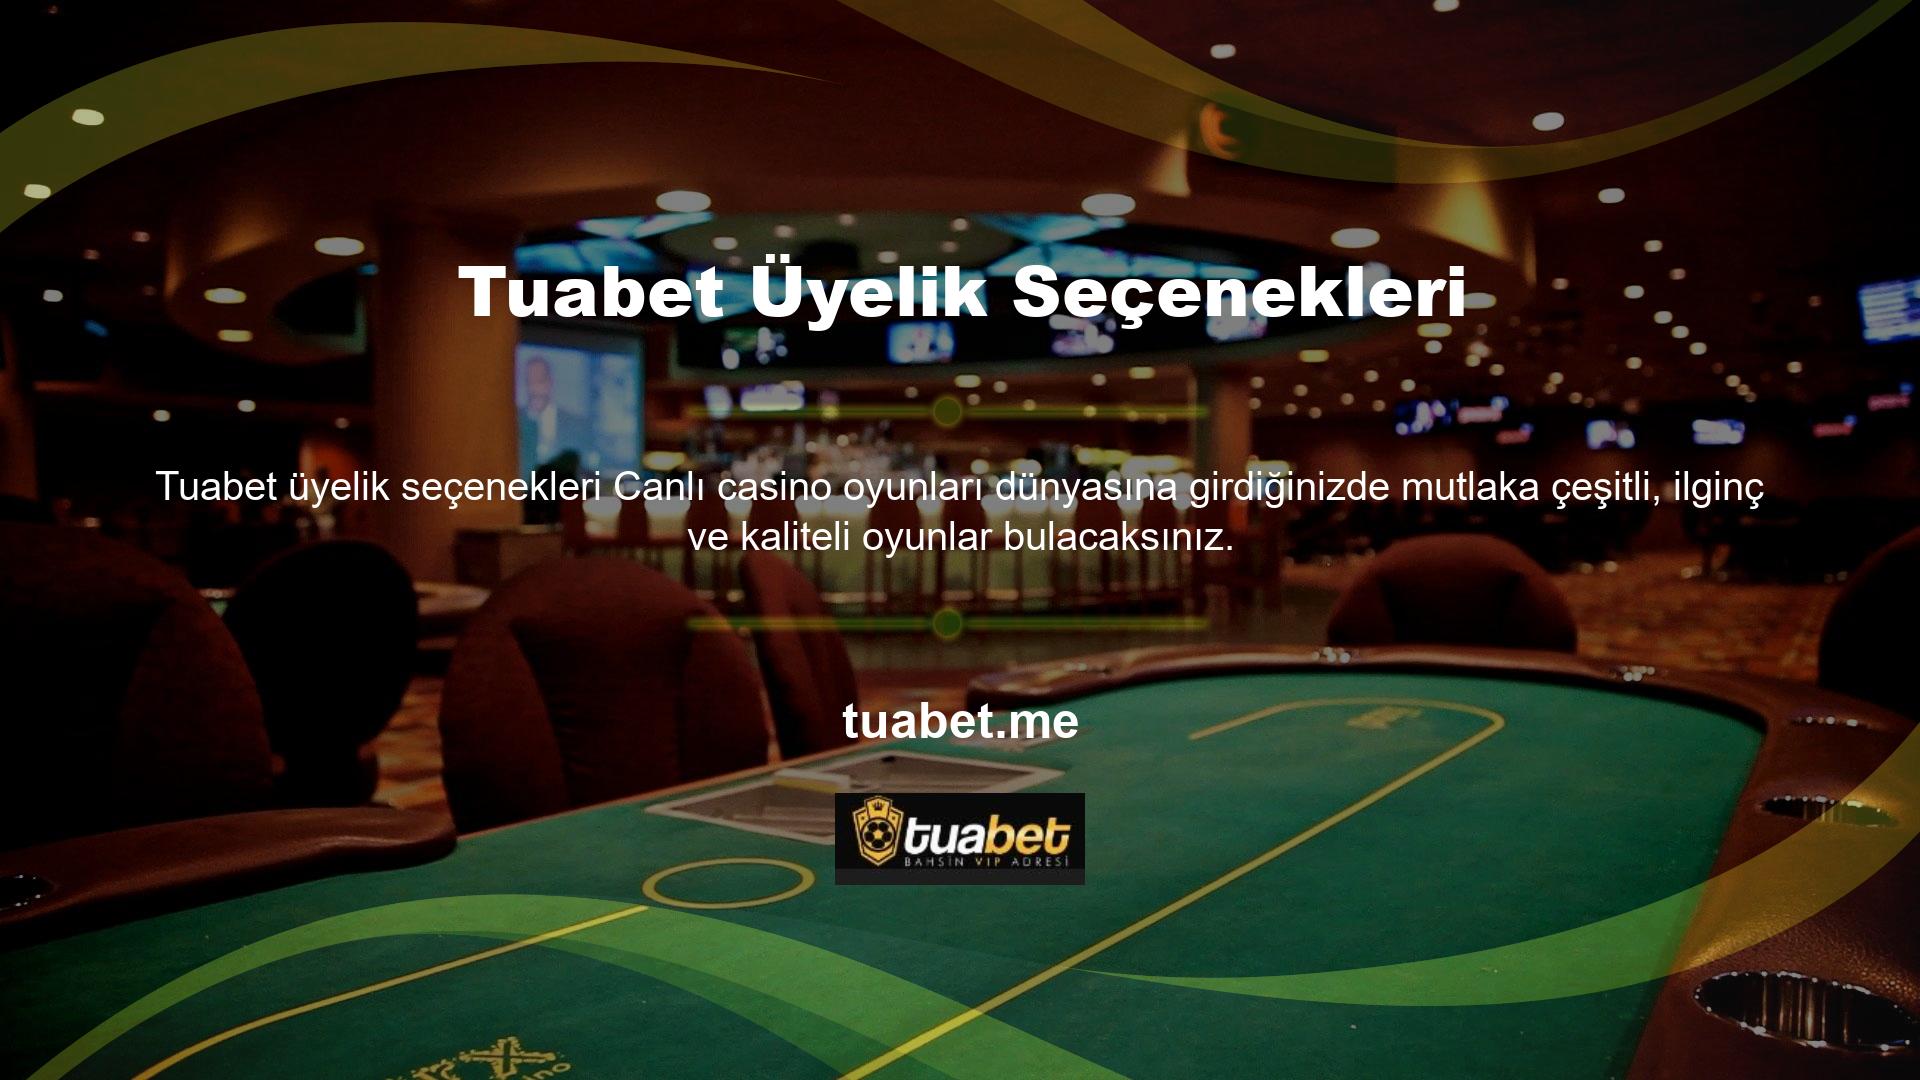 Rulet oyunları, Tuabet web sitesinin canlı casino oyunları bölümündeki en popüler seçeneklerden biridir